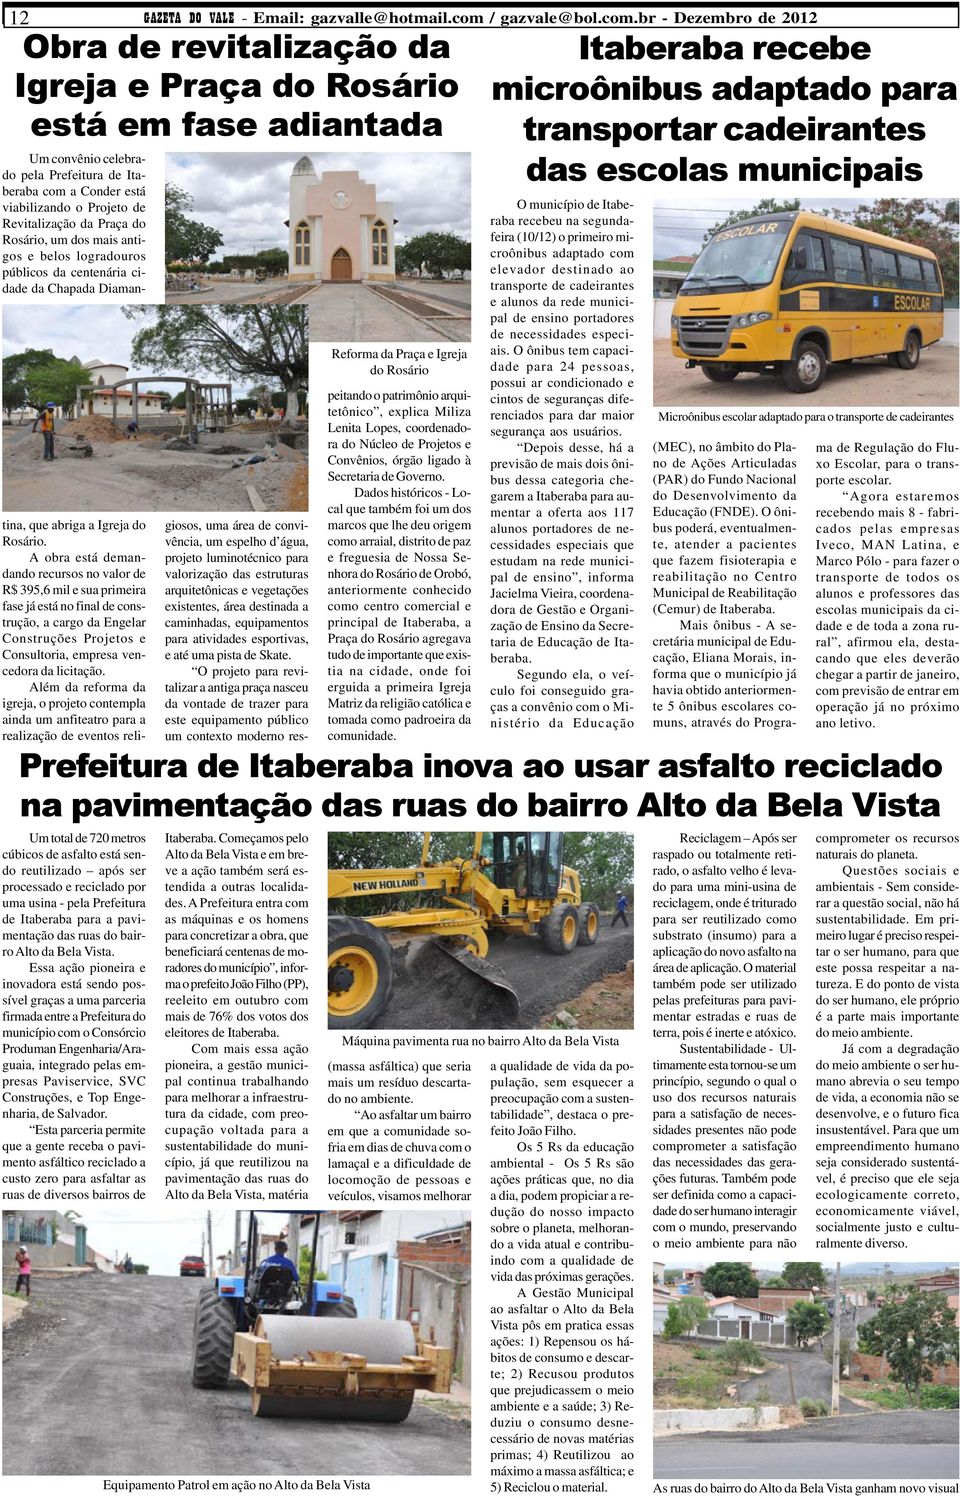 por uma usina - pela Prefeitura de Itaberaba para a pavimentação das ruas do bairro Alto da Bela Vista.